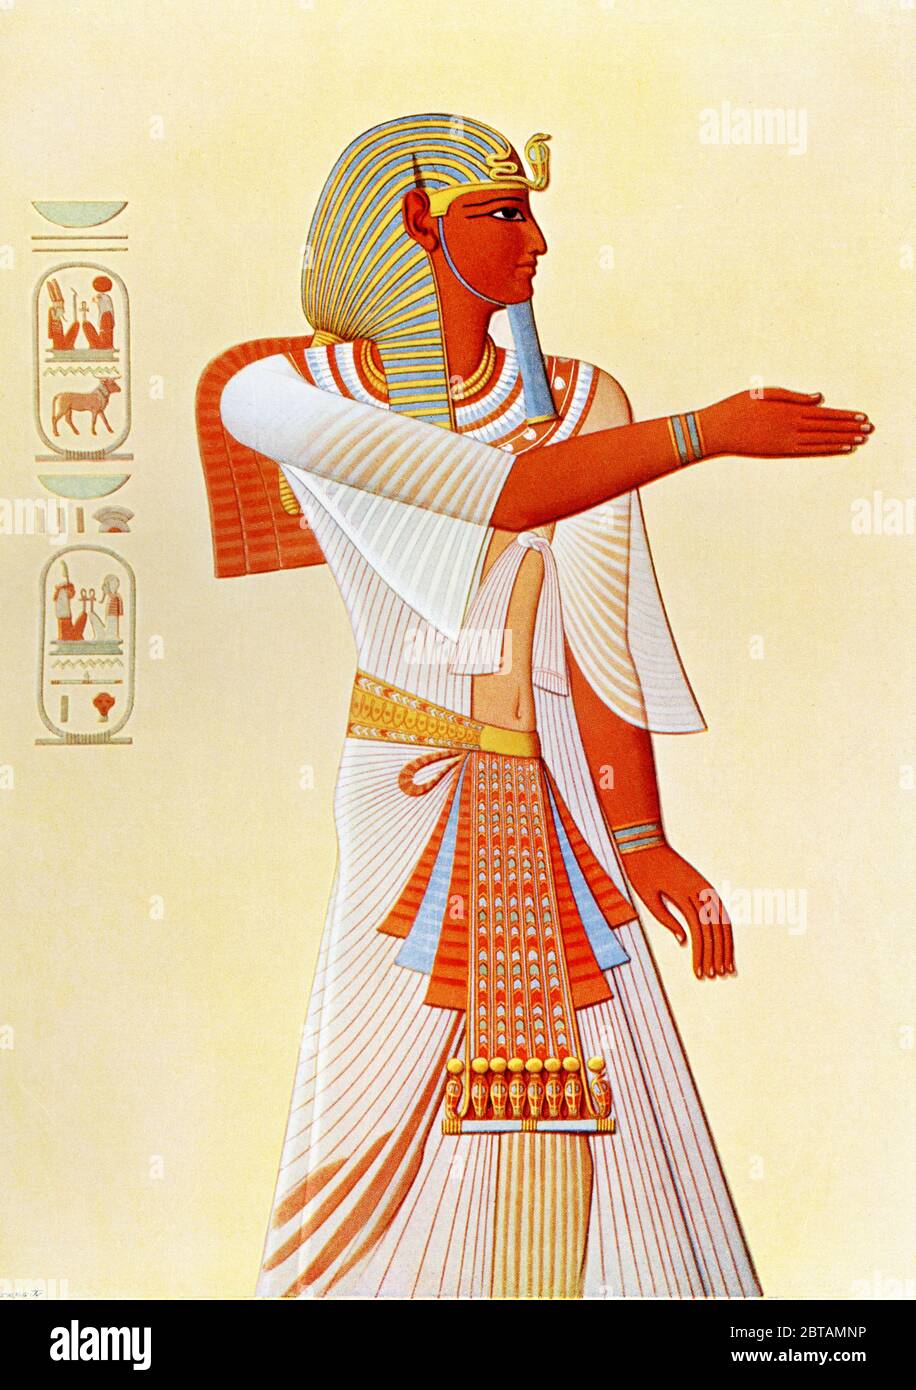 Amenhotep II (anche Amenefi e Amenophis) è pensato per essere il faraone egiziano al tempo dell'Esodo, il nome dato all'evento biblico che descrive le partenze degli Israeliti dall'Egitto. Amenhotep II fu il settimo faraone della XVIII dinastia, durante il periodo di tempo ora chiamato nuovo Regno. Governò intorno al 1410 a.C. questo dipinto murale fu scoperto a Tebe in Egitto e fu copiato dall'orientalista francese Emile Prisse. Foto Stock